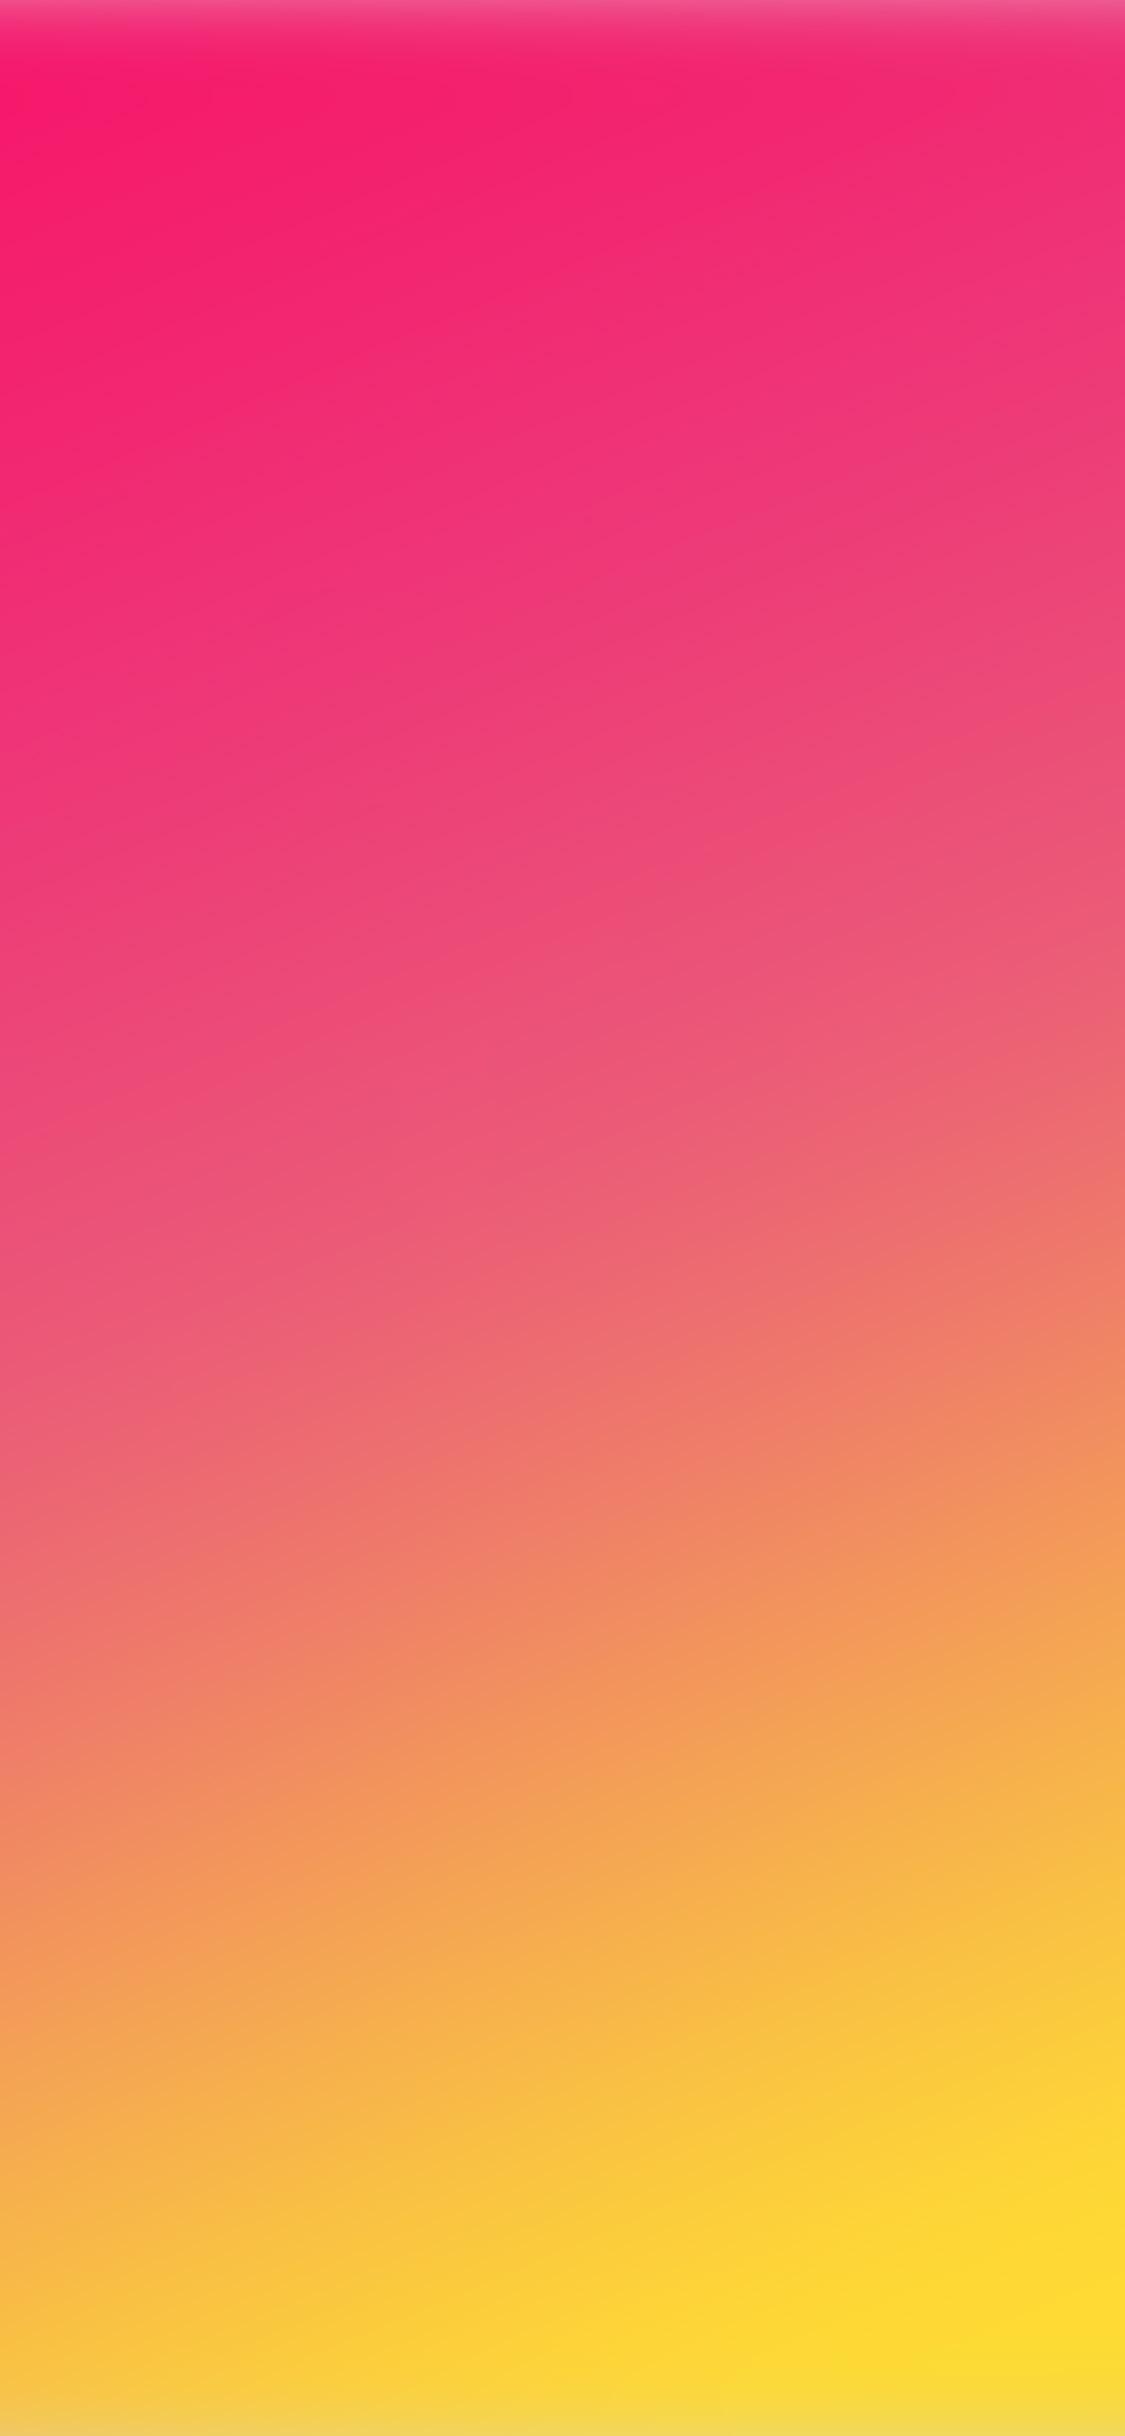 Red Yellow Orange Pink Background: Được tạo nên bằng những sắc màu ấn tượng như đỏ, vàng, cam và hồng, những hình ảnh thành phần sử dụng màu sắc này sẽ mang lại cảm giác ấm áp, nổi bật và sôi động.